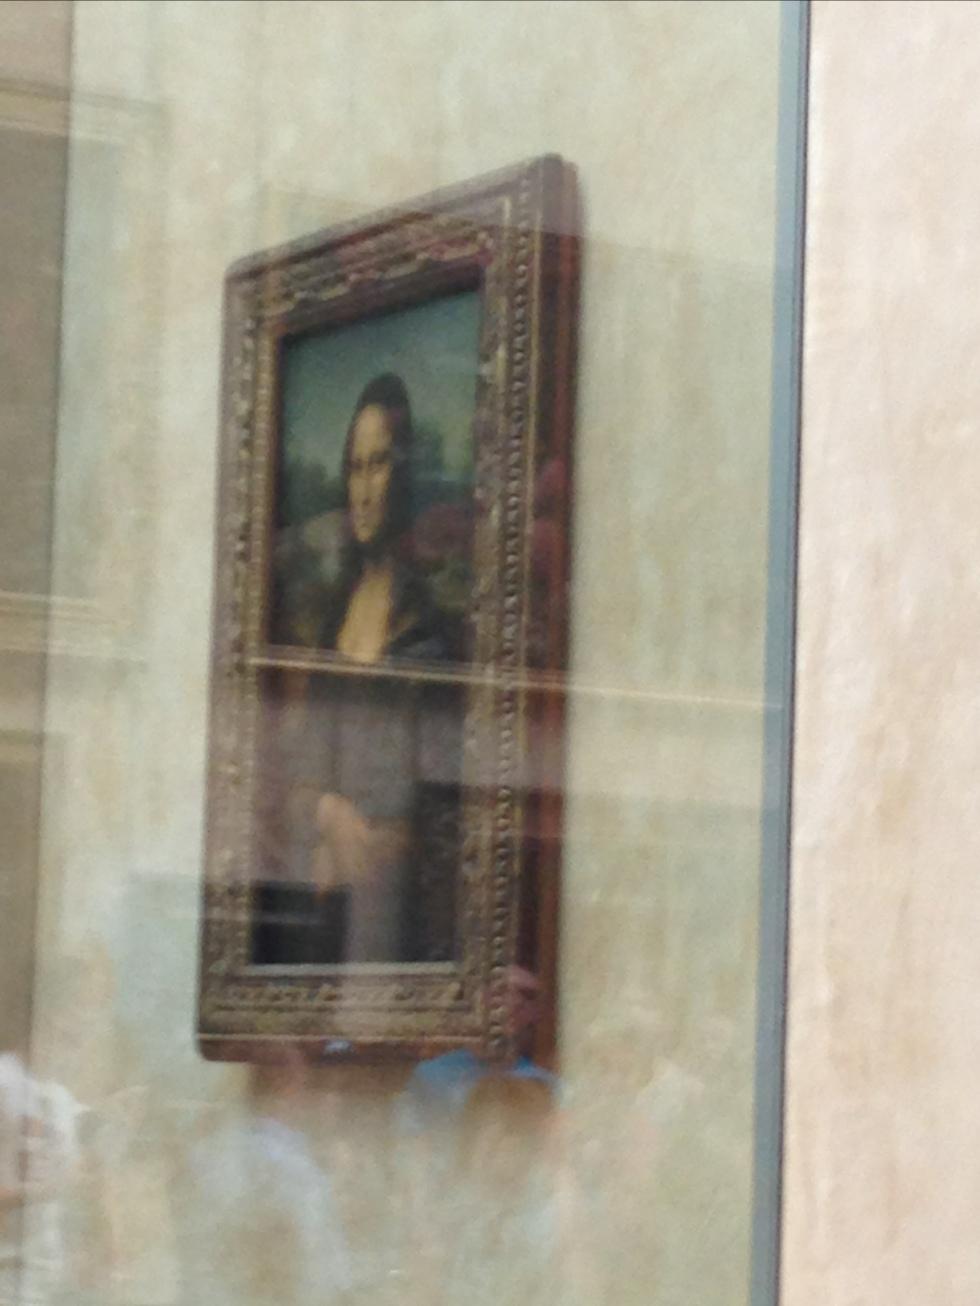 Tittar på Mona Lisa